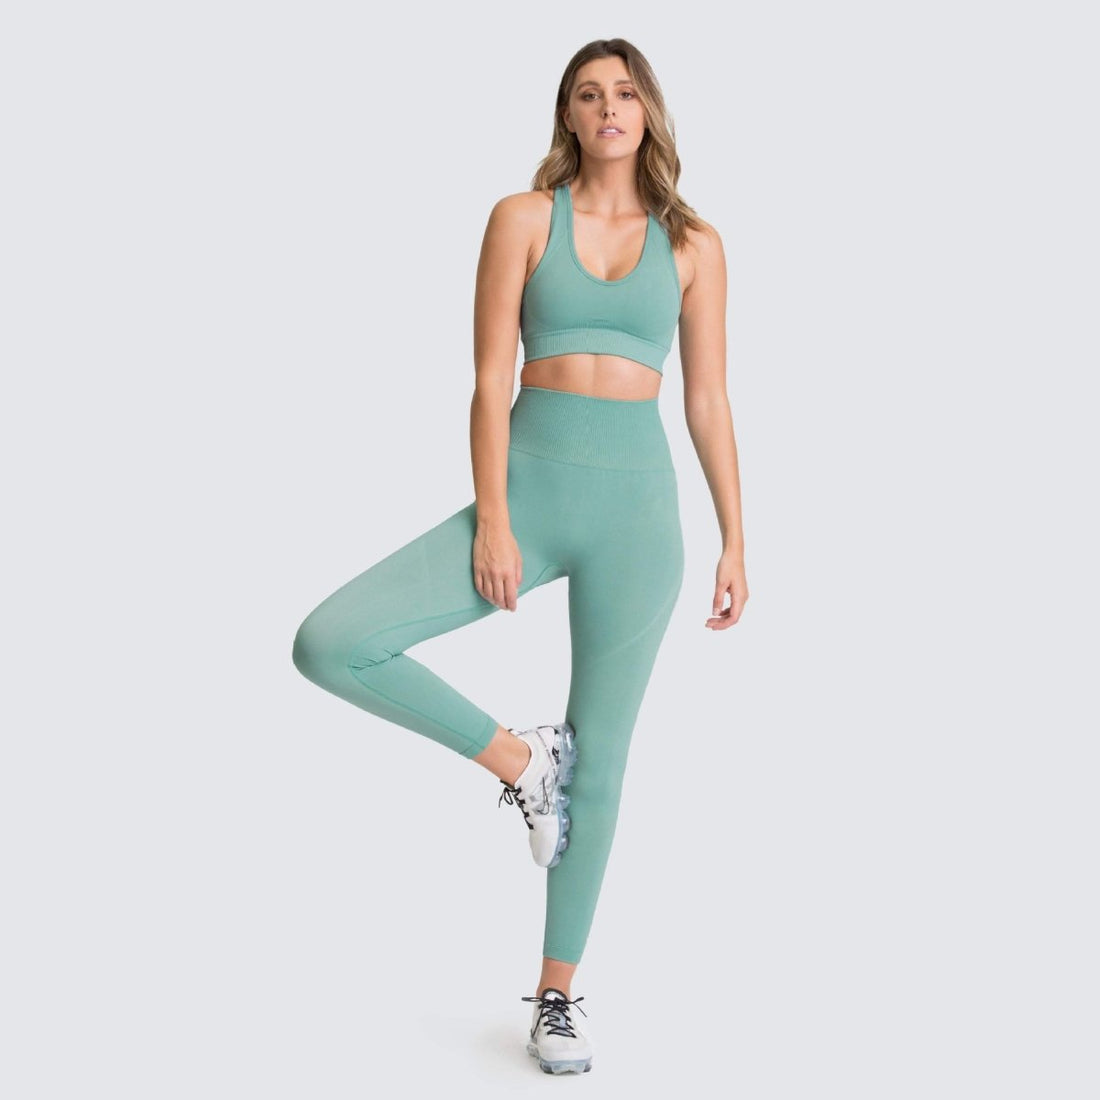 XWWDP Nylon Yoga Clothes Gym Clothing Seamless Set Women Fitness